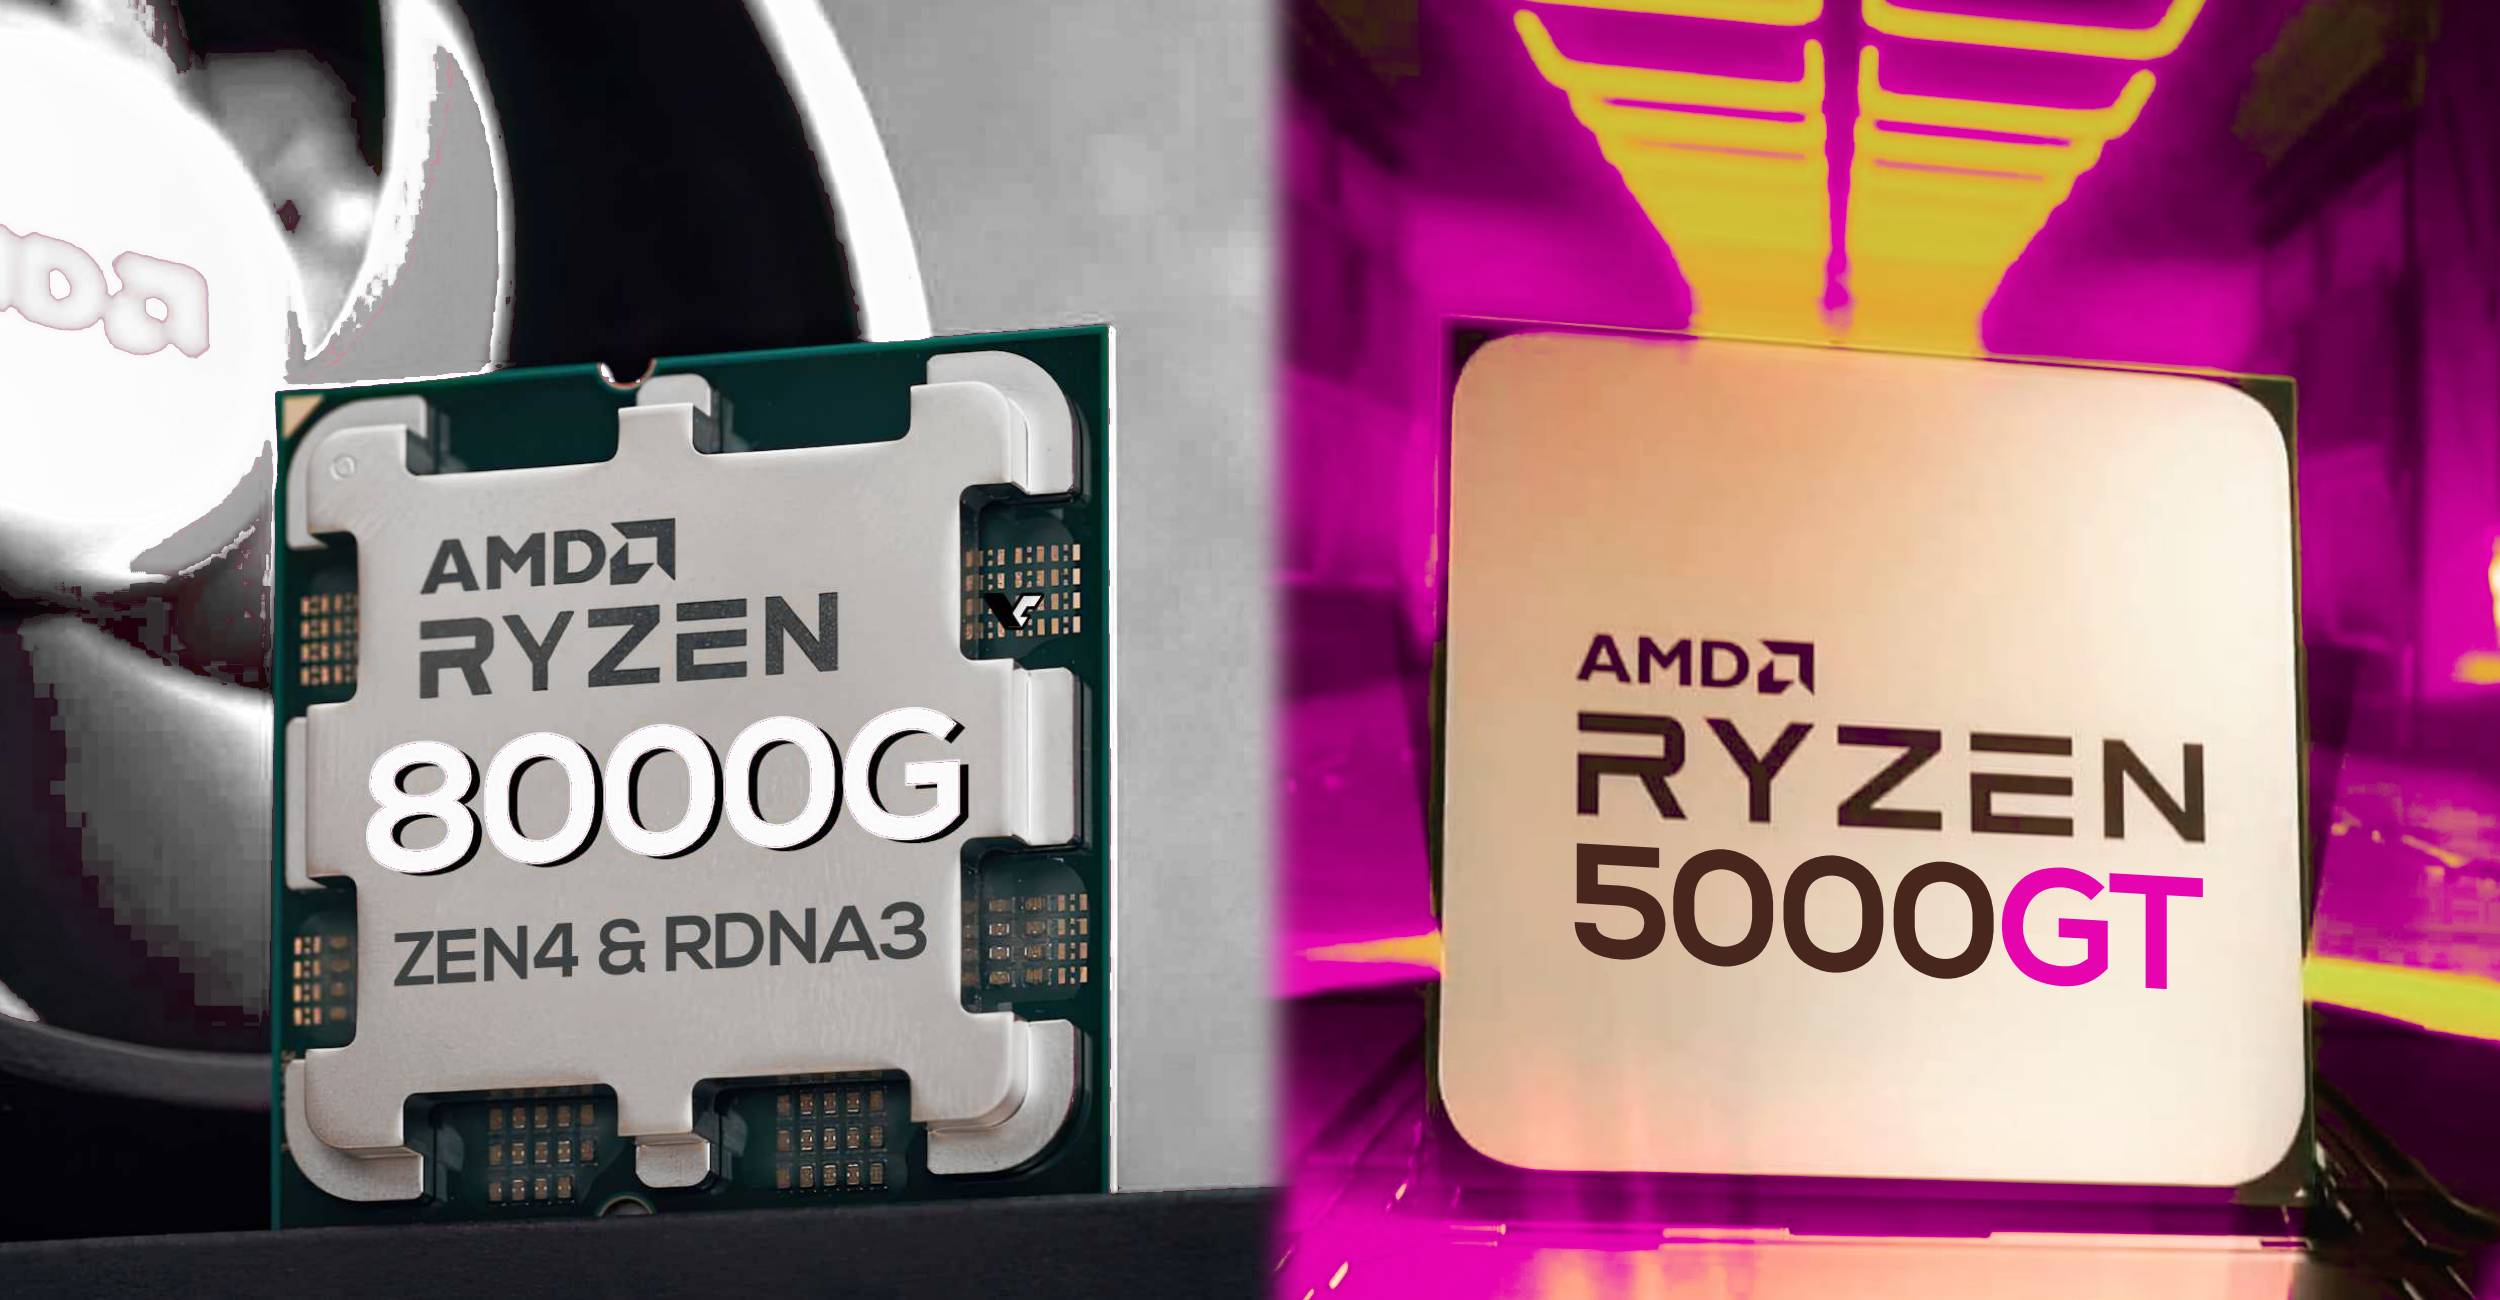 AMD Ryzen 8000G AM5 specs and release date leaks out, Ryzen 5000GT